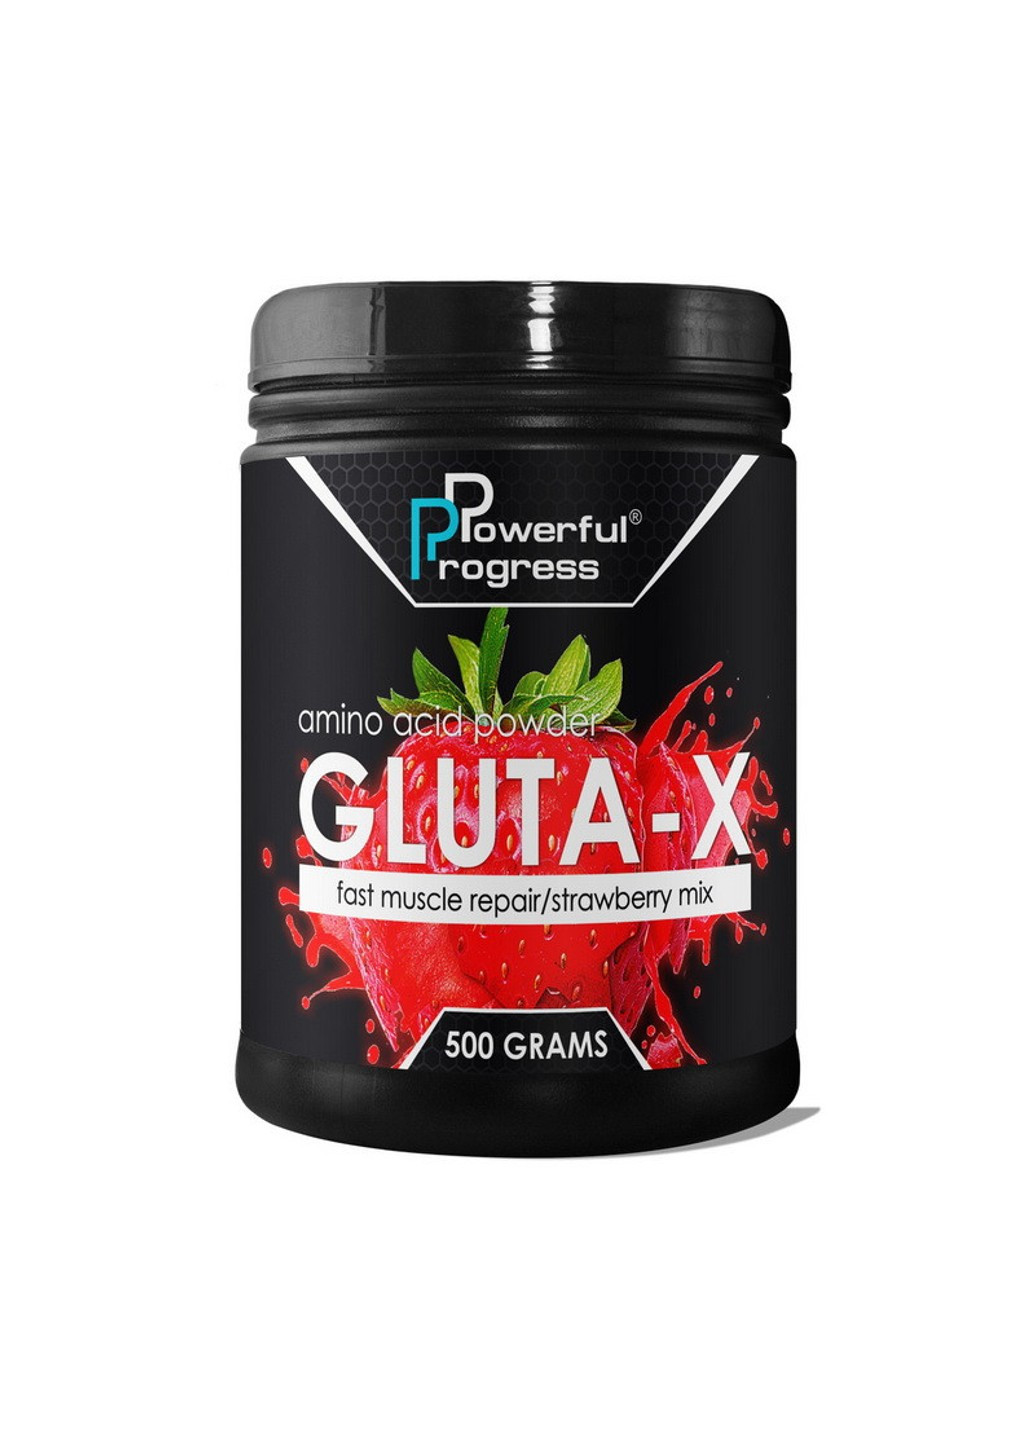 Глютамин Gluta-X (500 г) поверфул прогресс strawberry Powerful Progress (255362845)